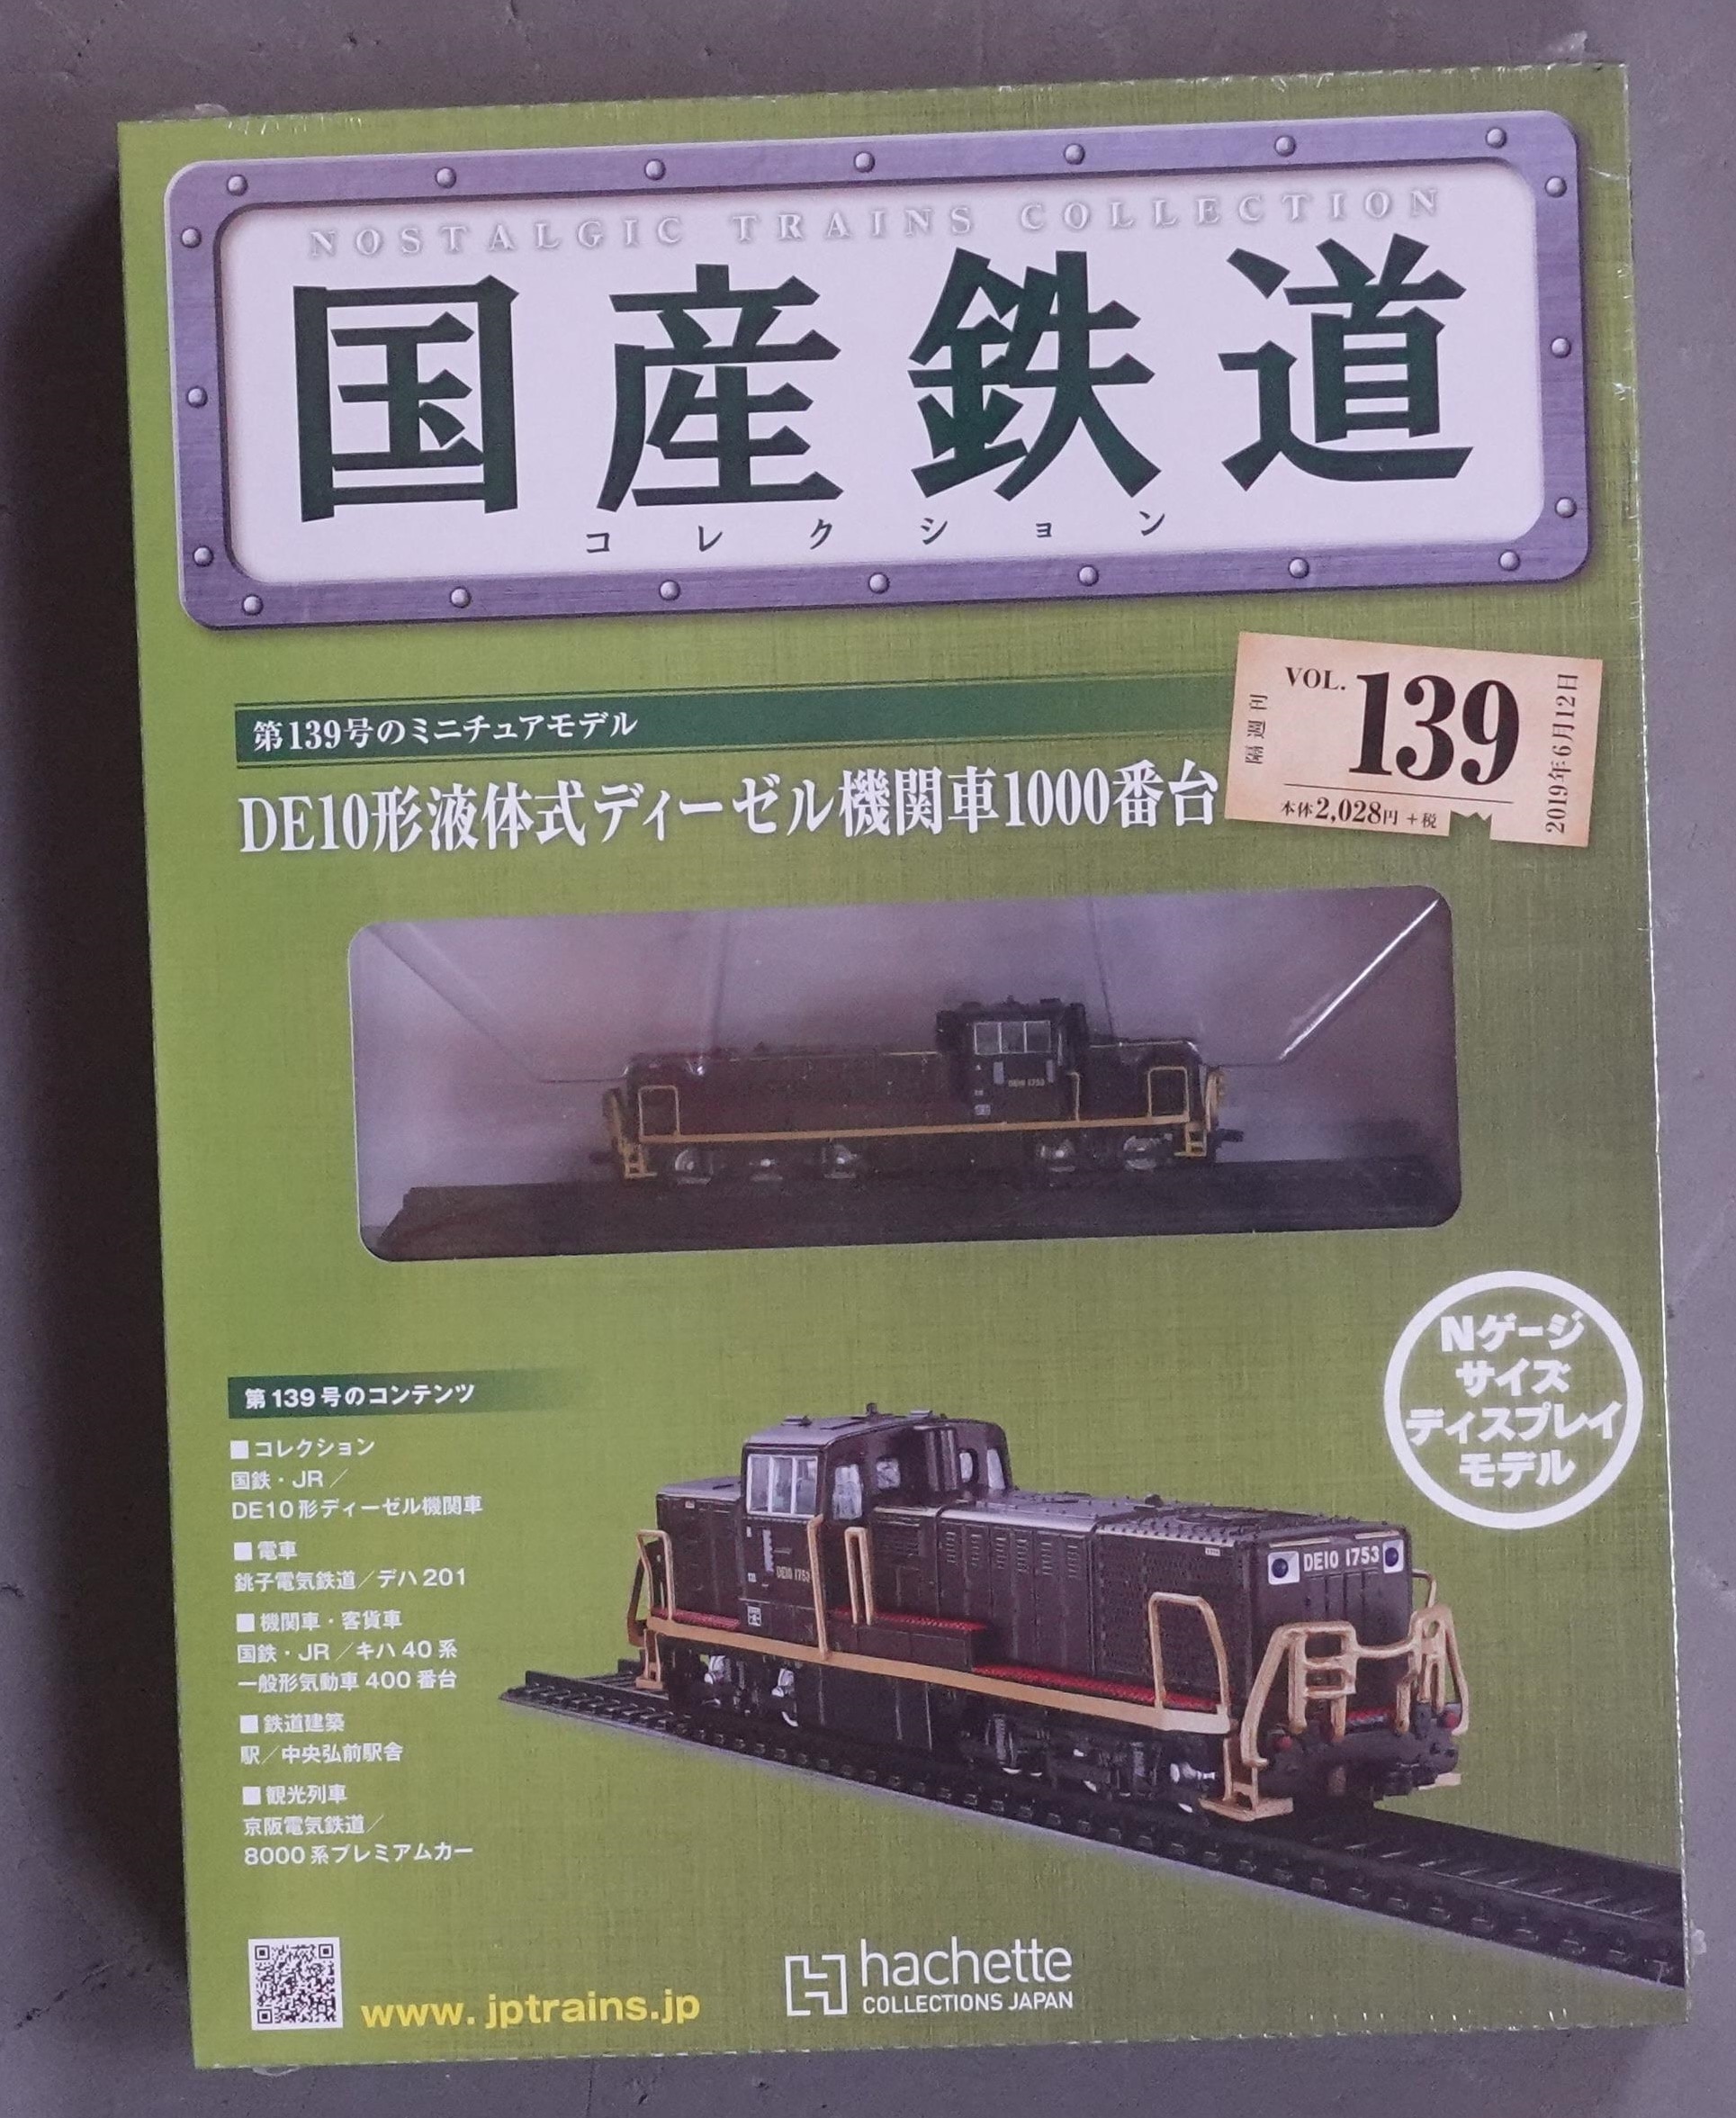 国産鉄道コレクション DE10形液体式ディーゼル機関車1000番台Vol